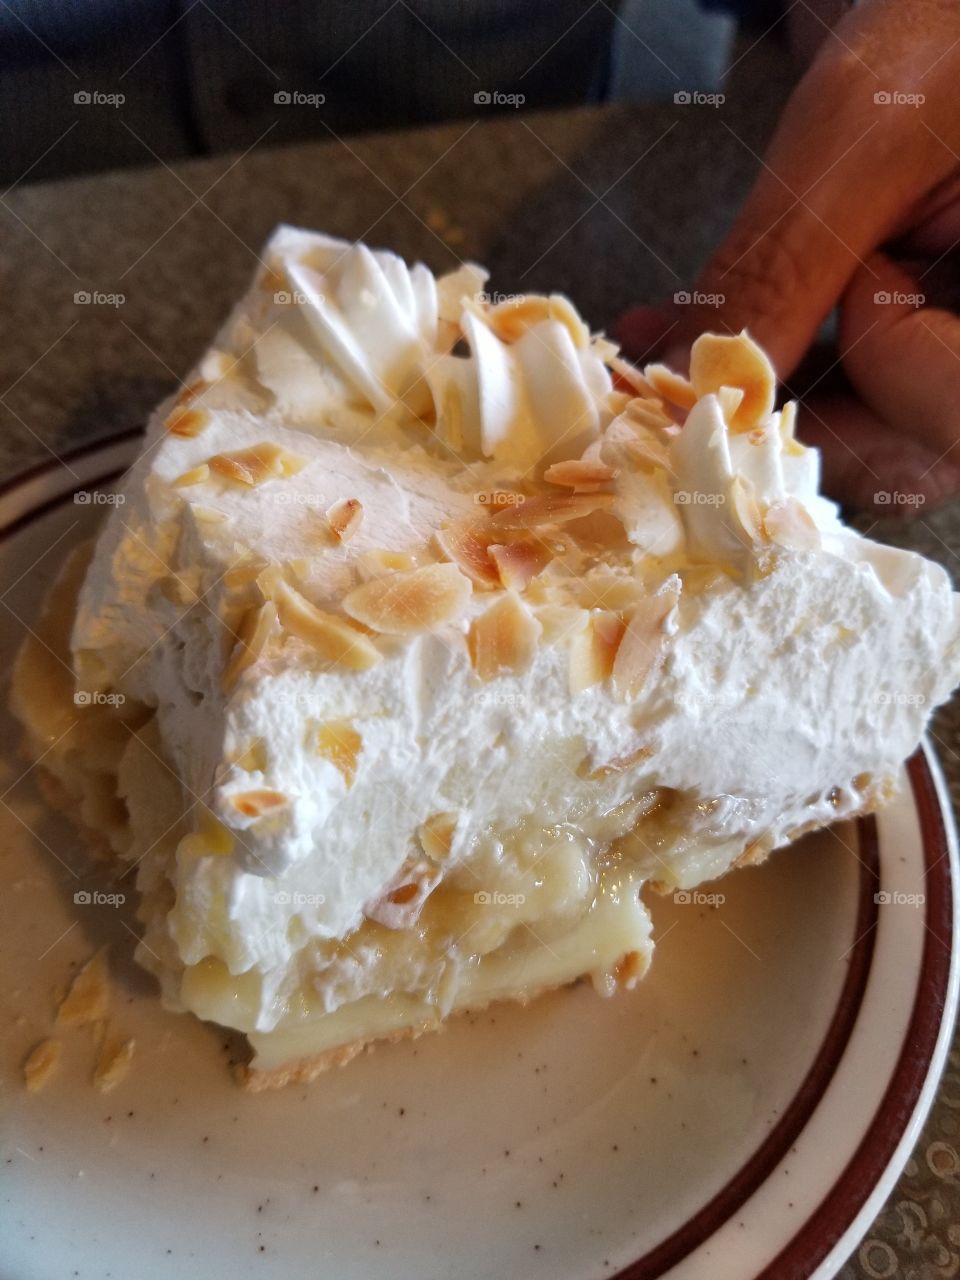 Creamy, Delicious Pie!